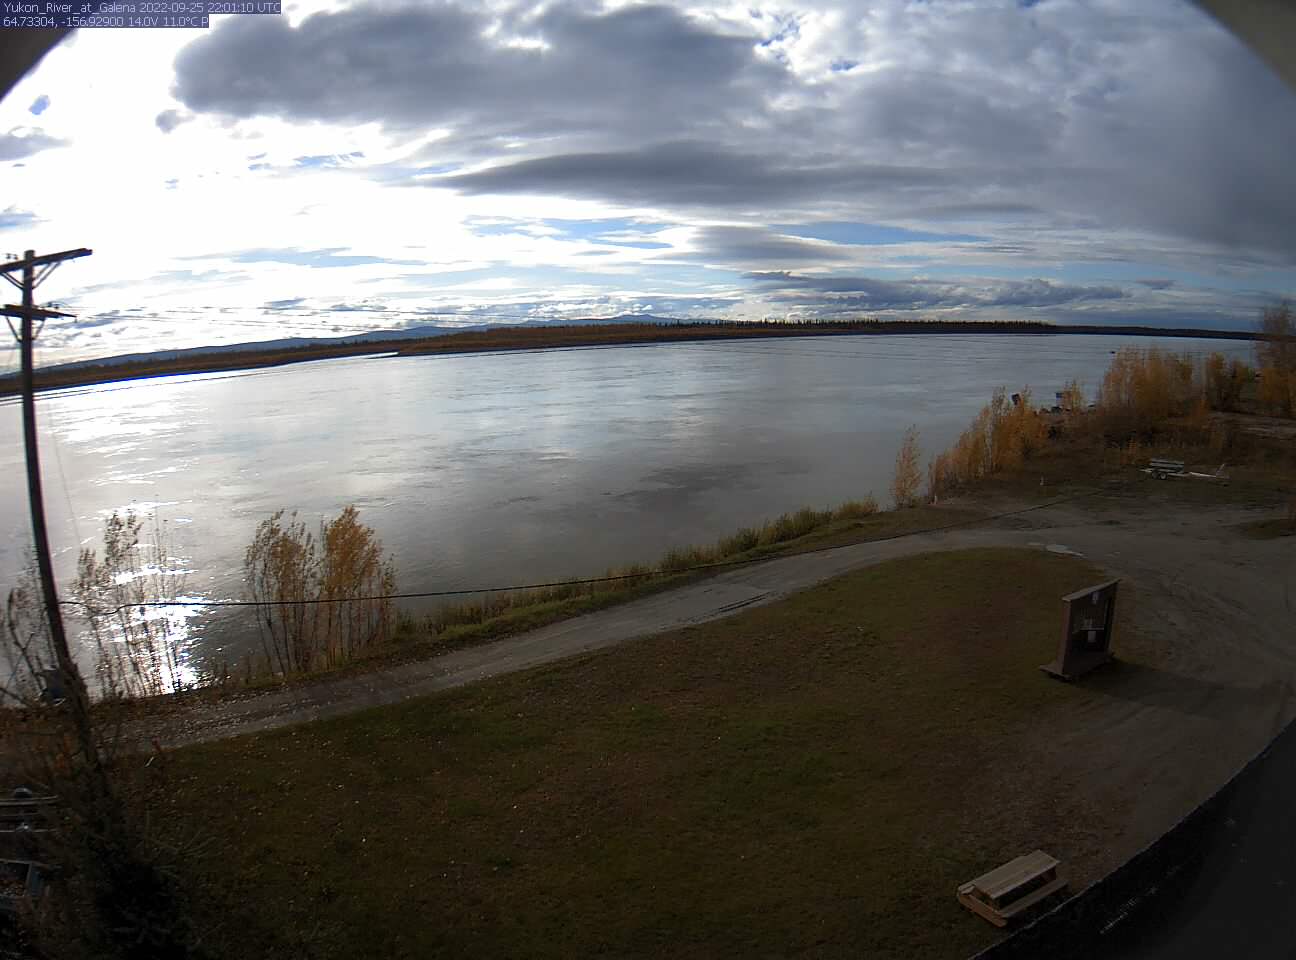 Yukon_River_at_Galena_20220925220111.jpg